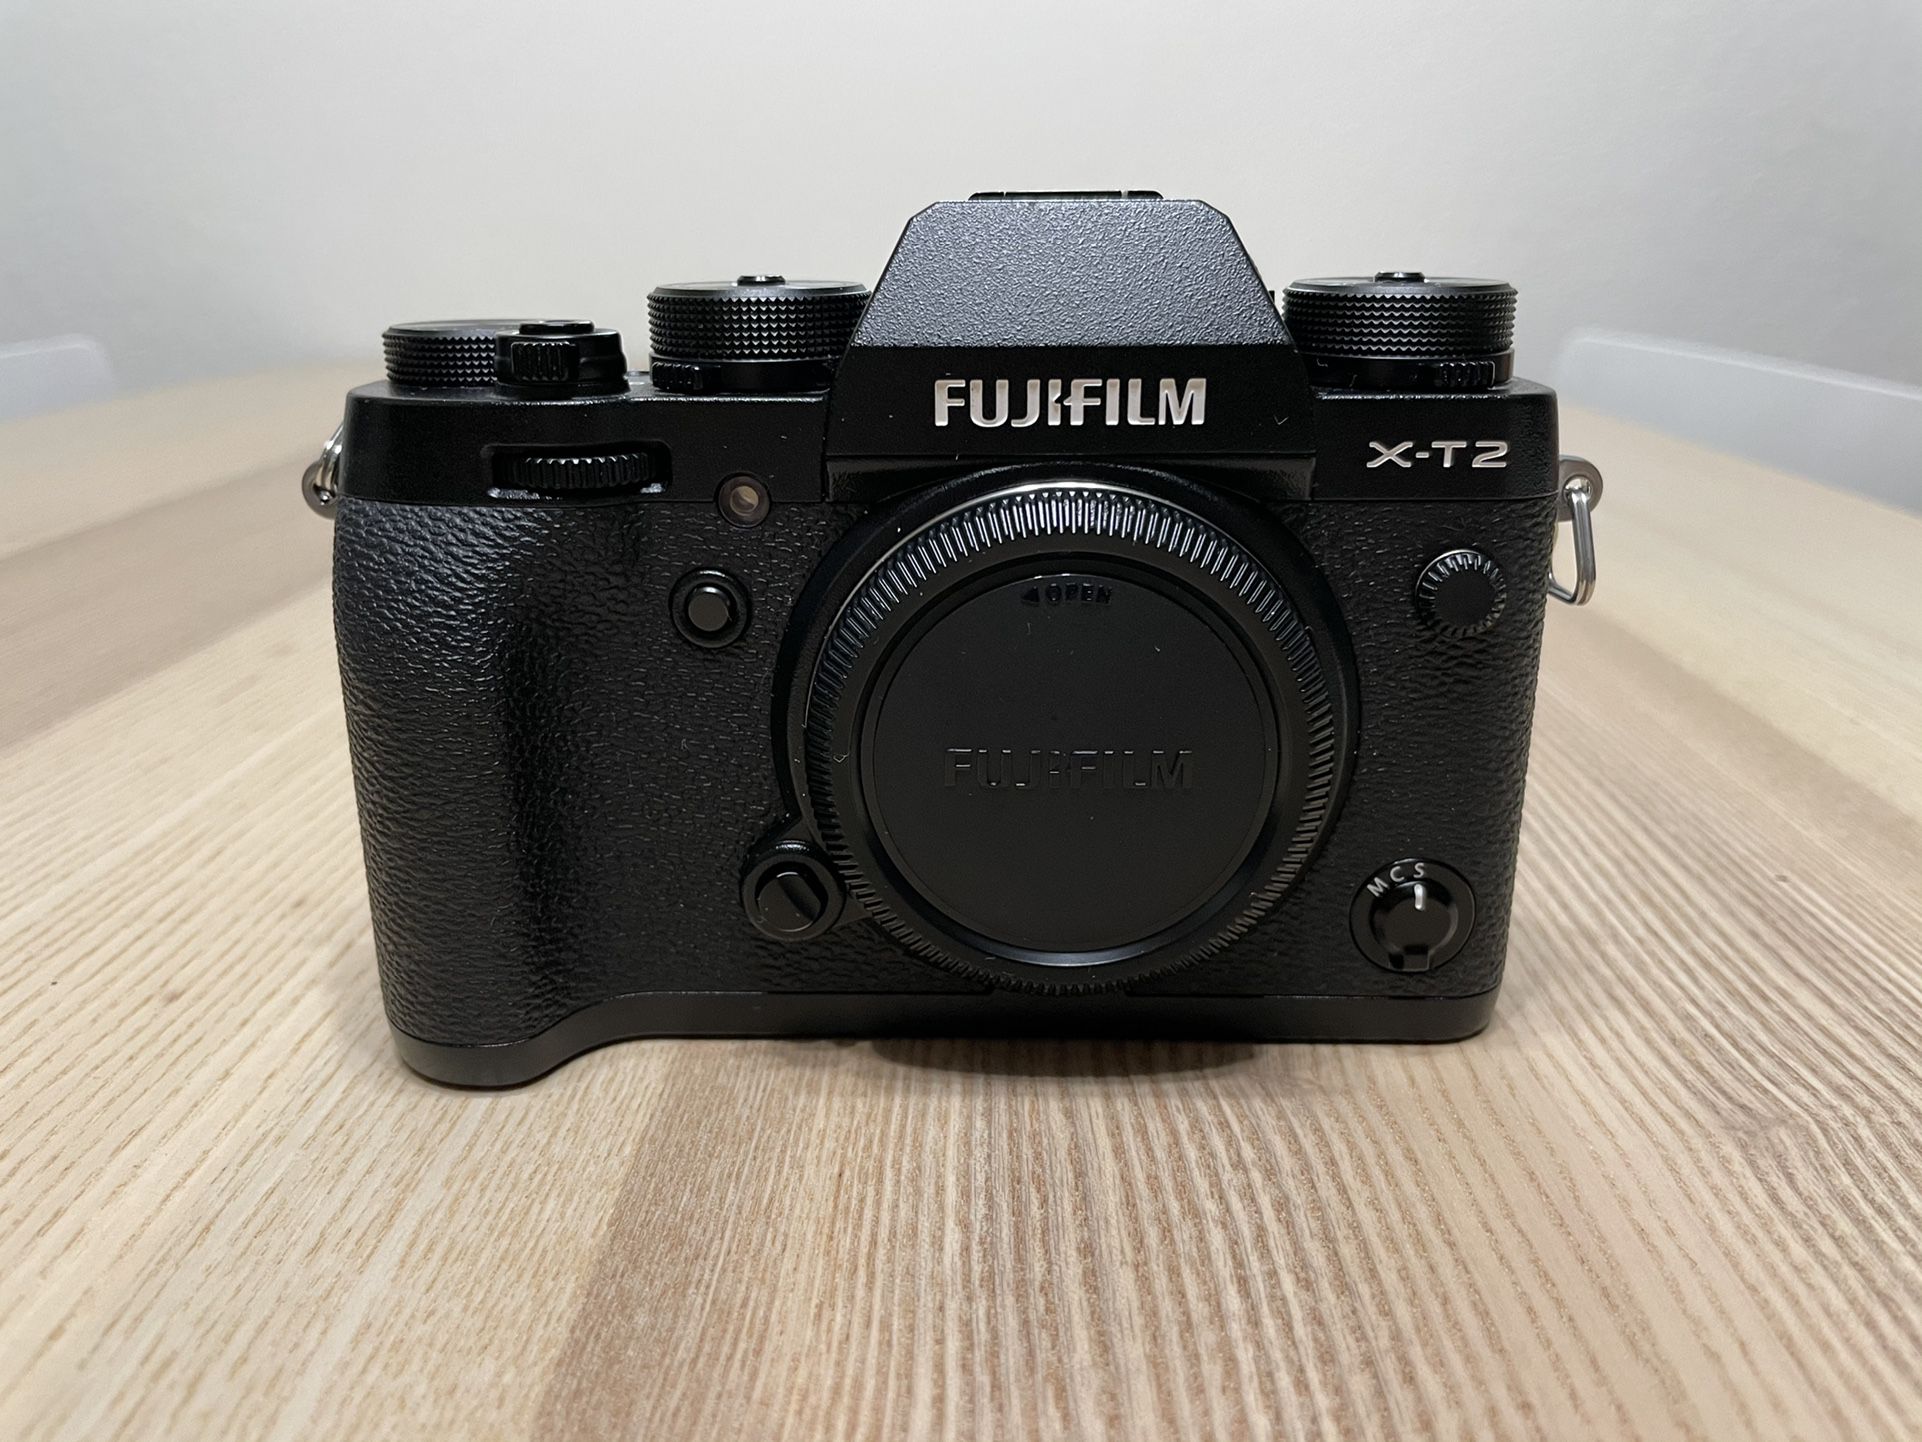 Fujifilm X-T2 Mirrorless Digital Camera with Accessories